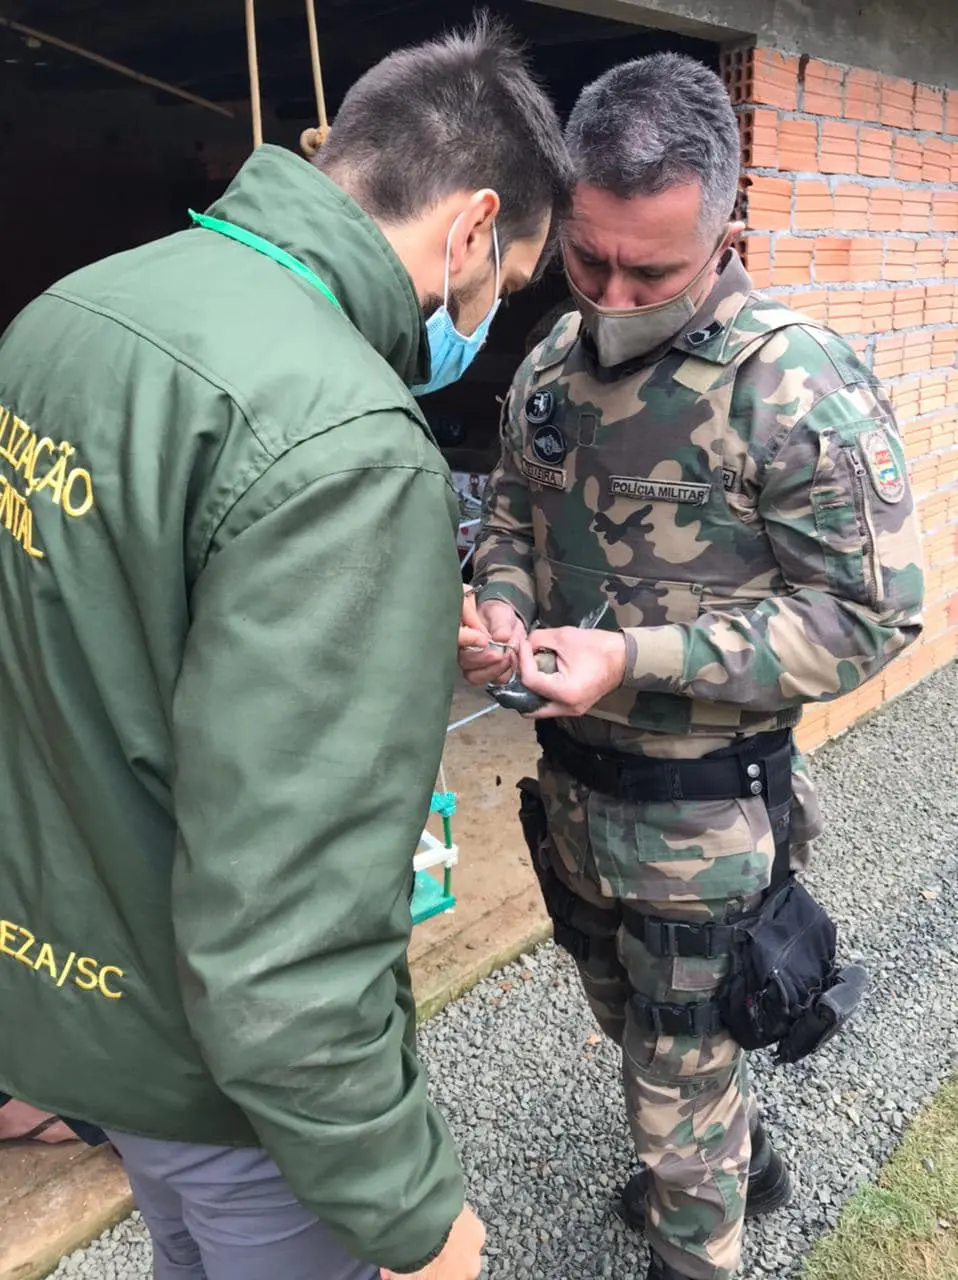 Operação da Fundave e Polícia Ambiental apreende aves silvestres mantidas em cativeiro